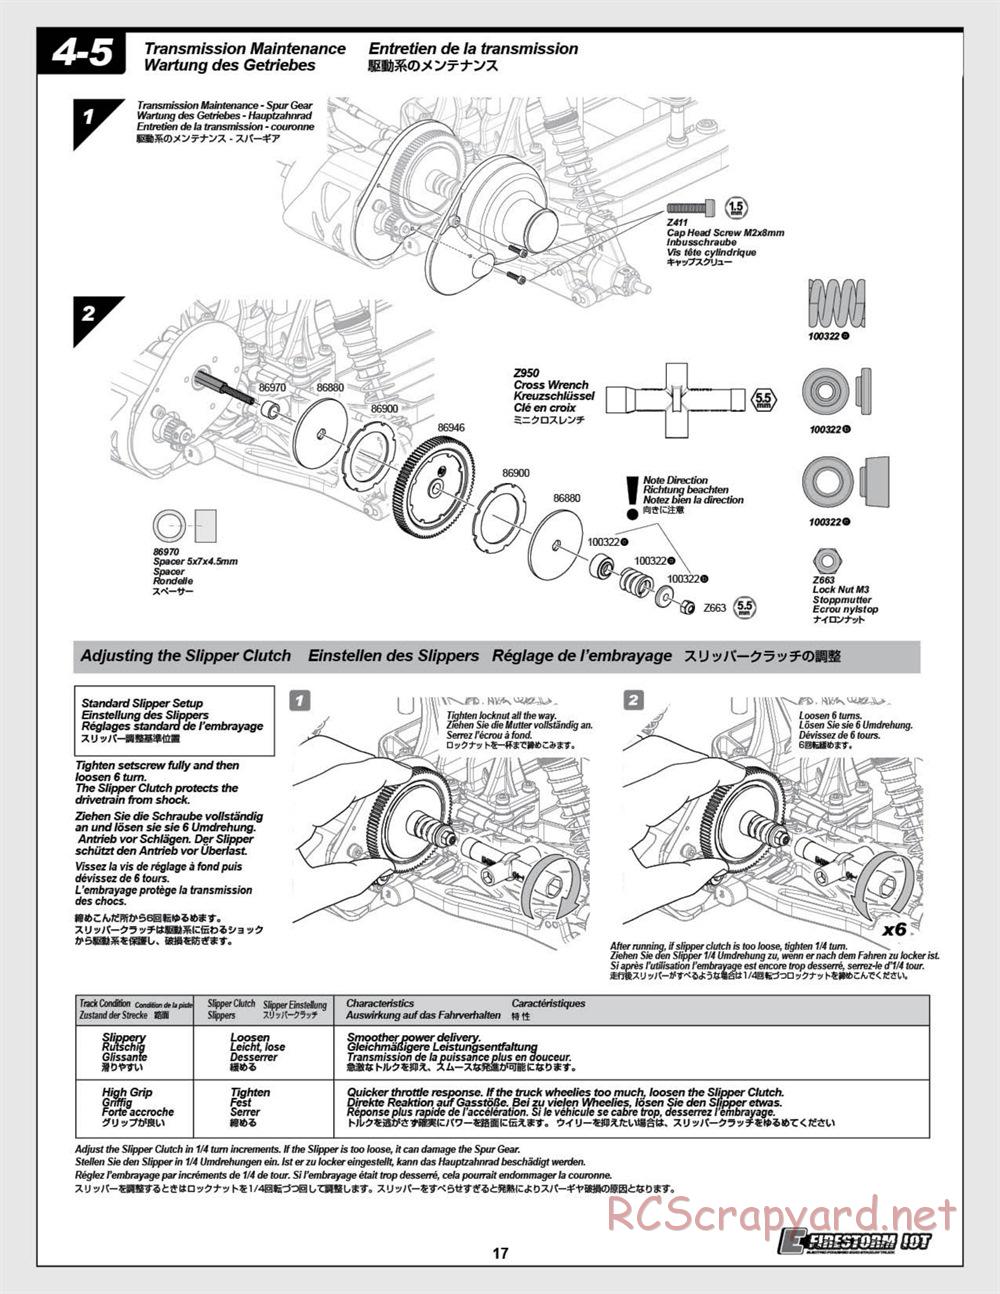 HPI - E-Firestorm 10T - Manual - Page 17